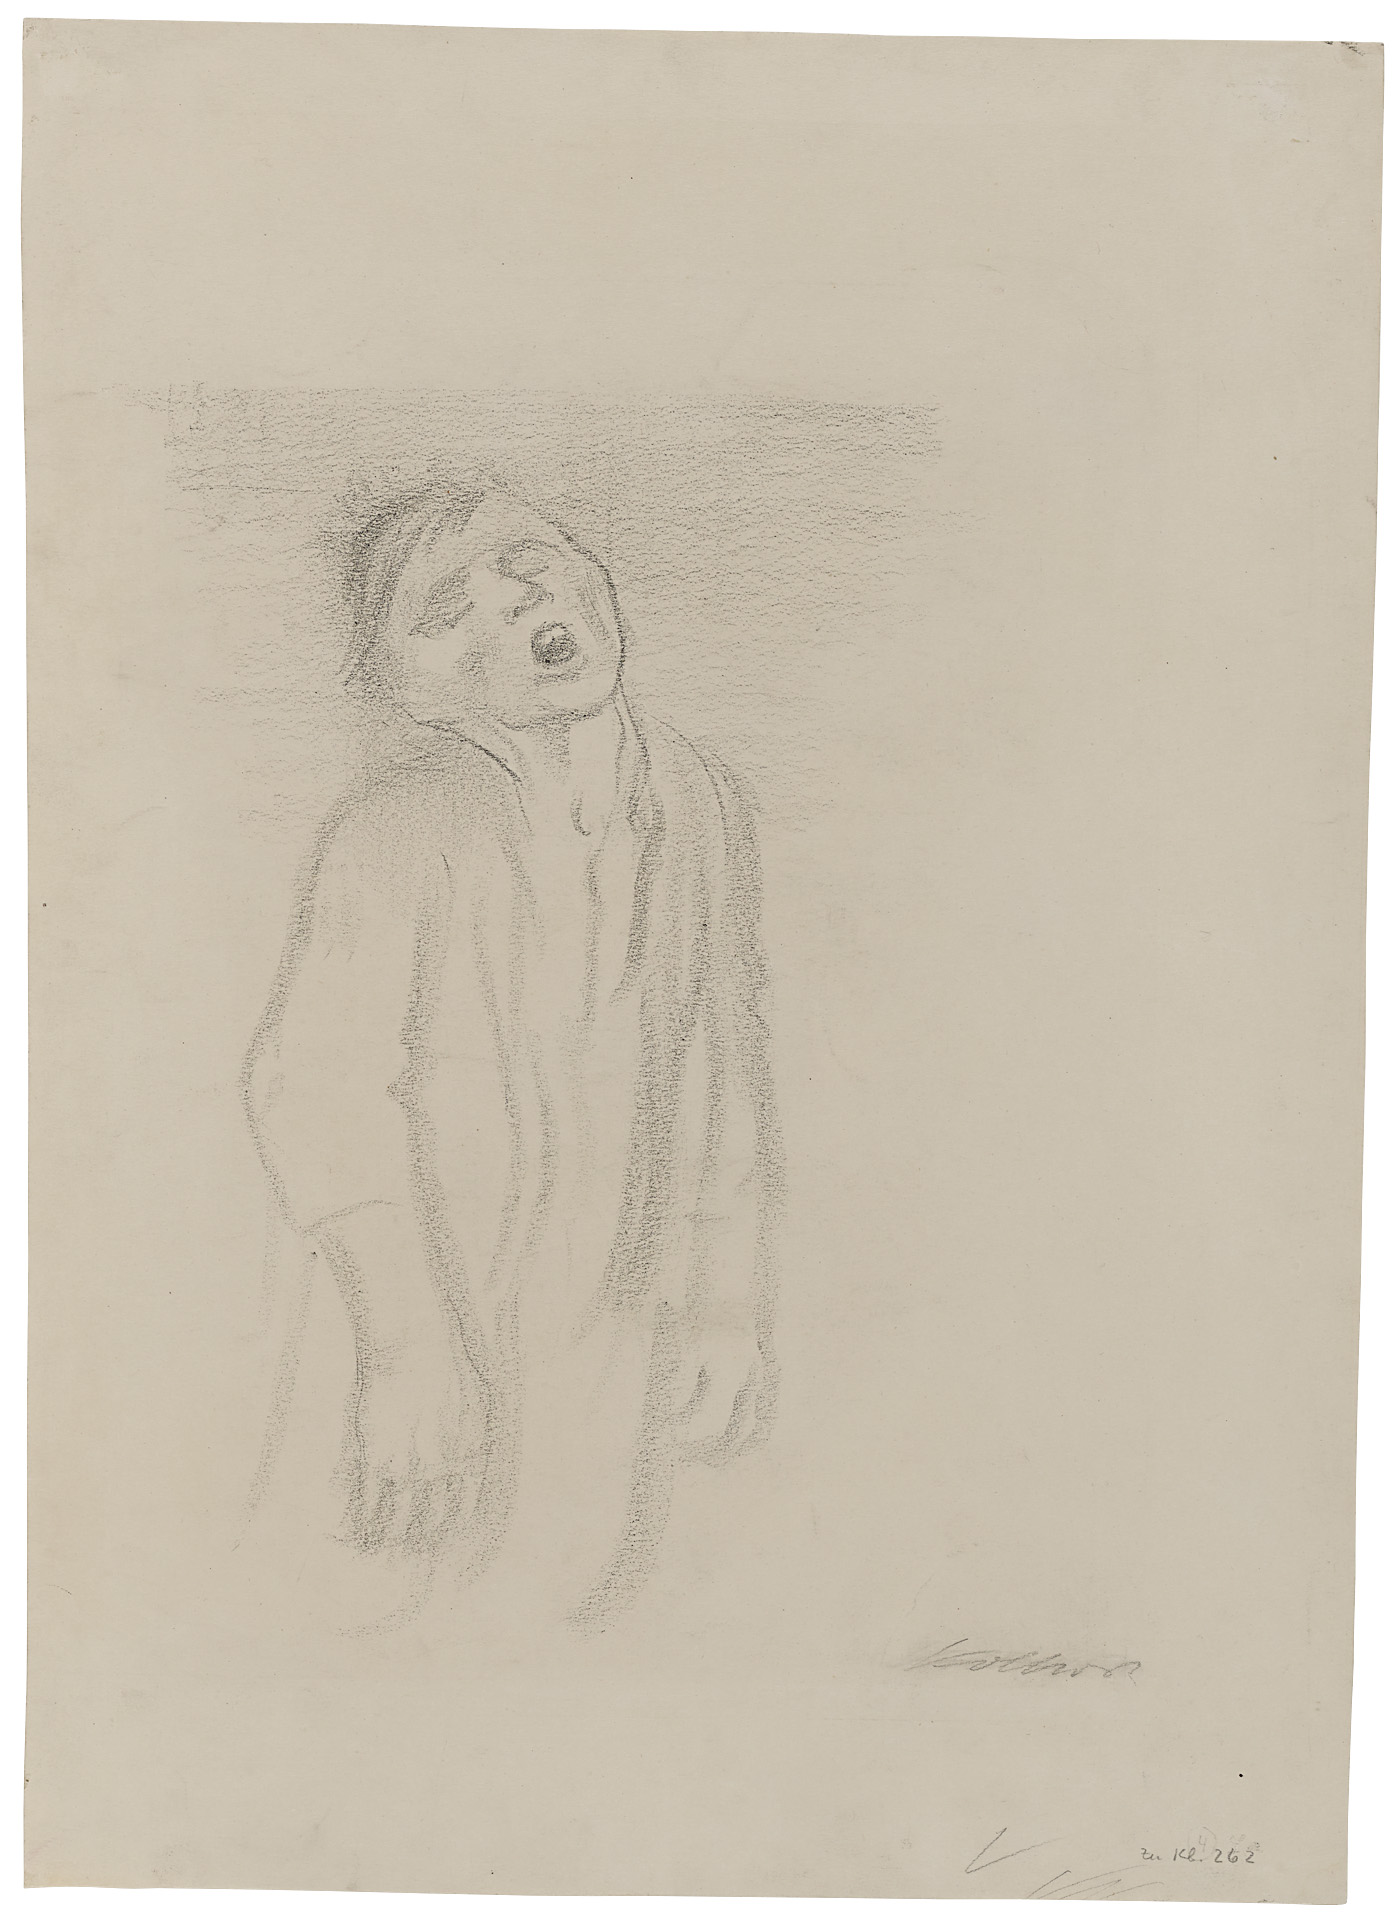 Käthe Kollwitz, Homme noyé, 1934, fusain sur papier épais de couleur chamois, NT 1258, Collection Kollwitz de Cologne © Käthe Kollwitz Museum Köln